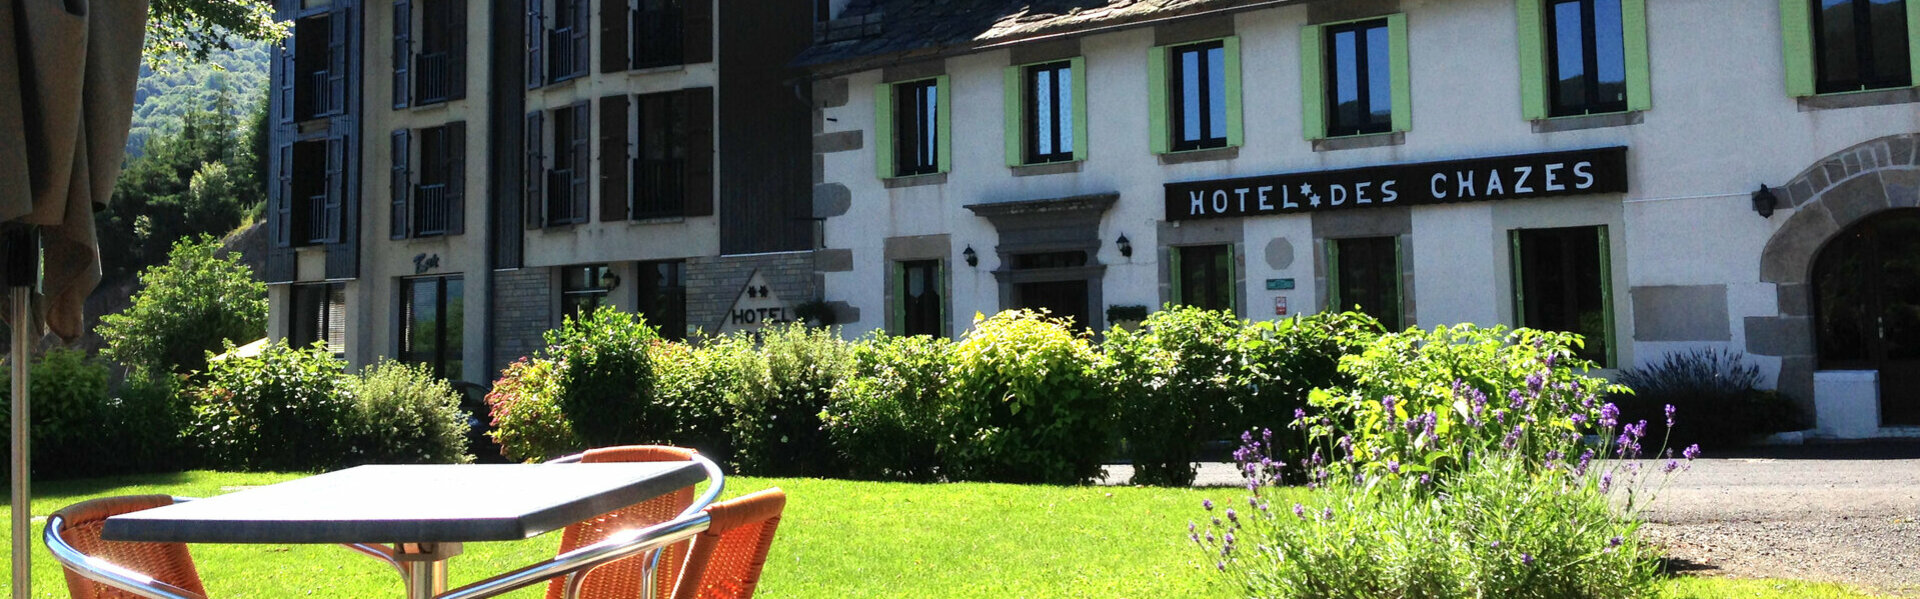 HOTEL DES CHAZES à Saint-Jacques-des-Blats - 3 étoiles